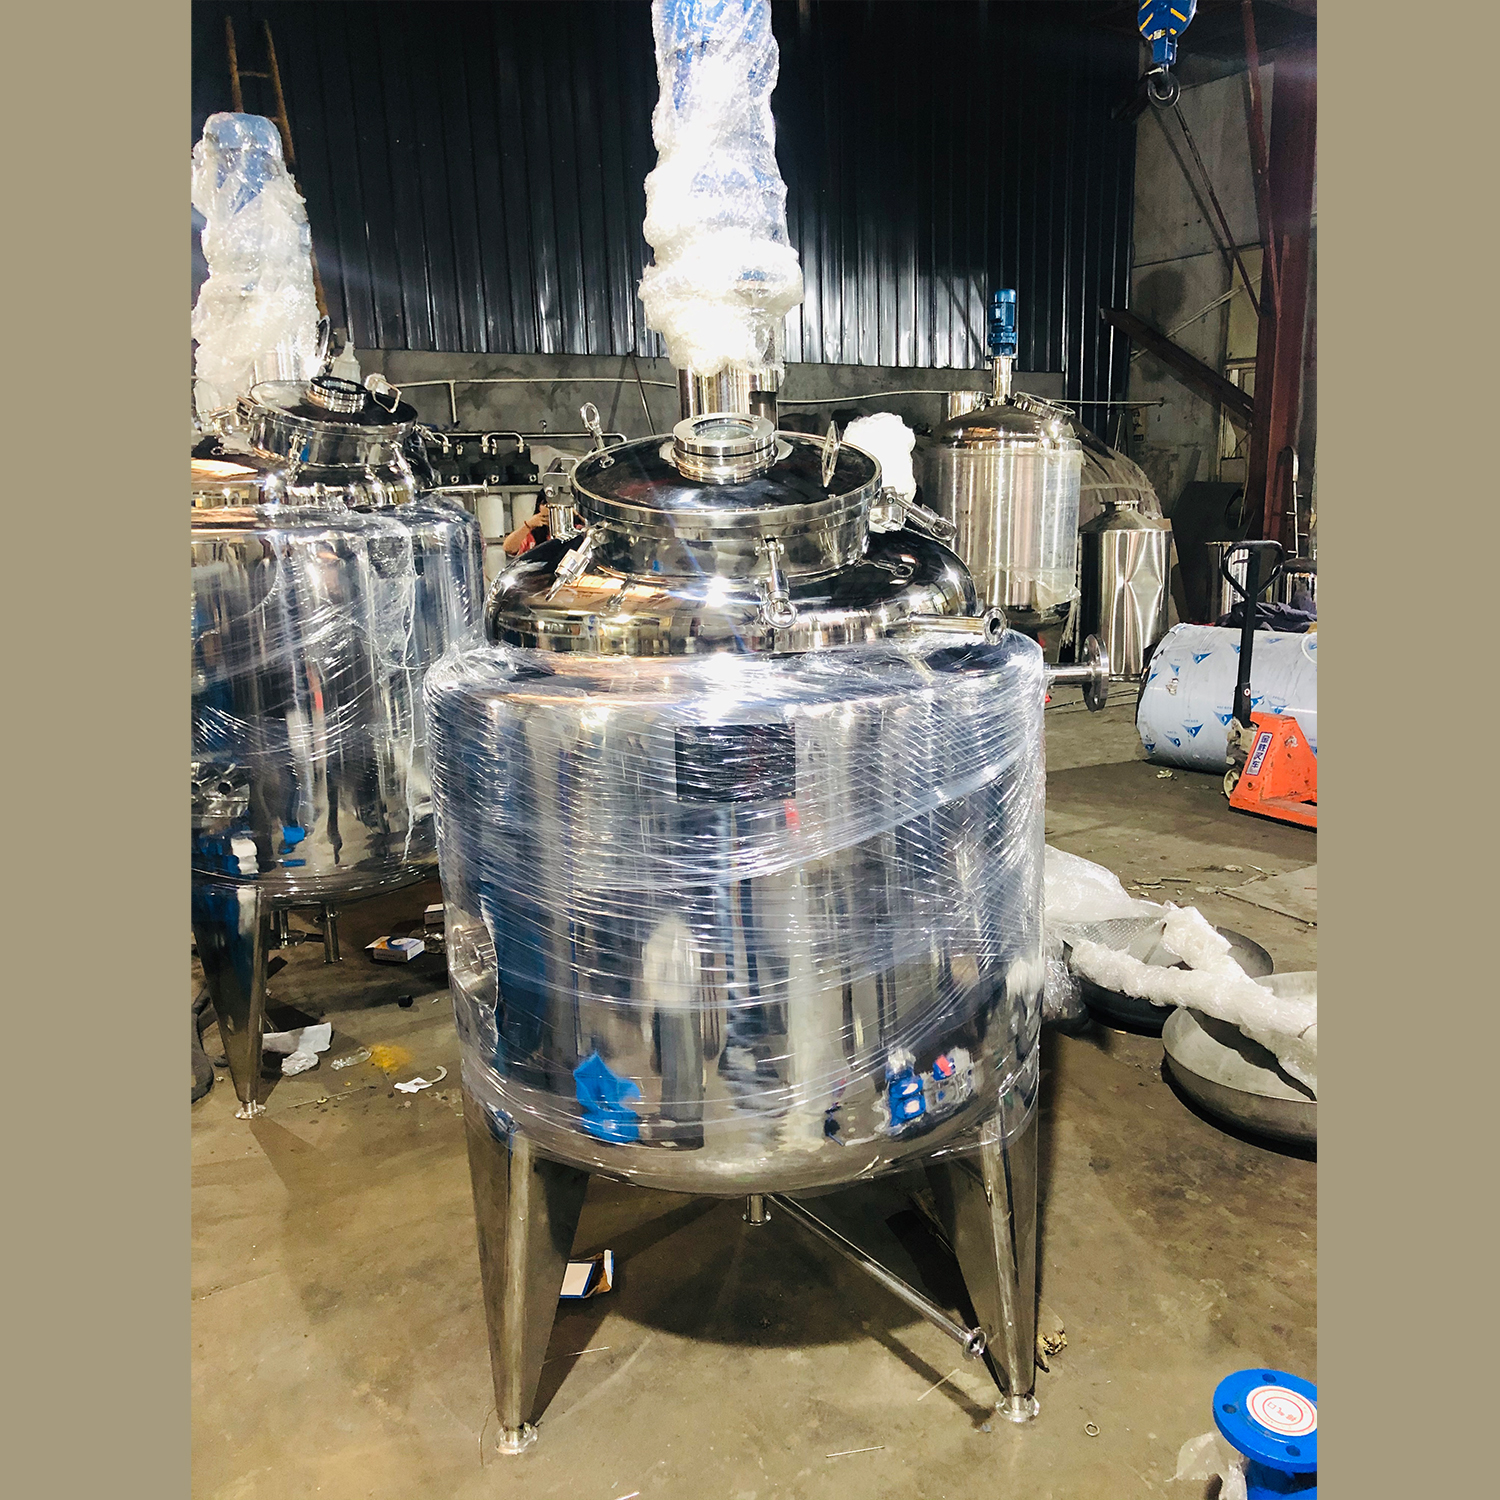 Tanque de mezcla de presión de fermentación aislado de grado sanitario de acero inoxidable